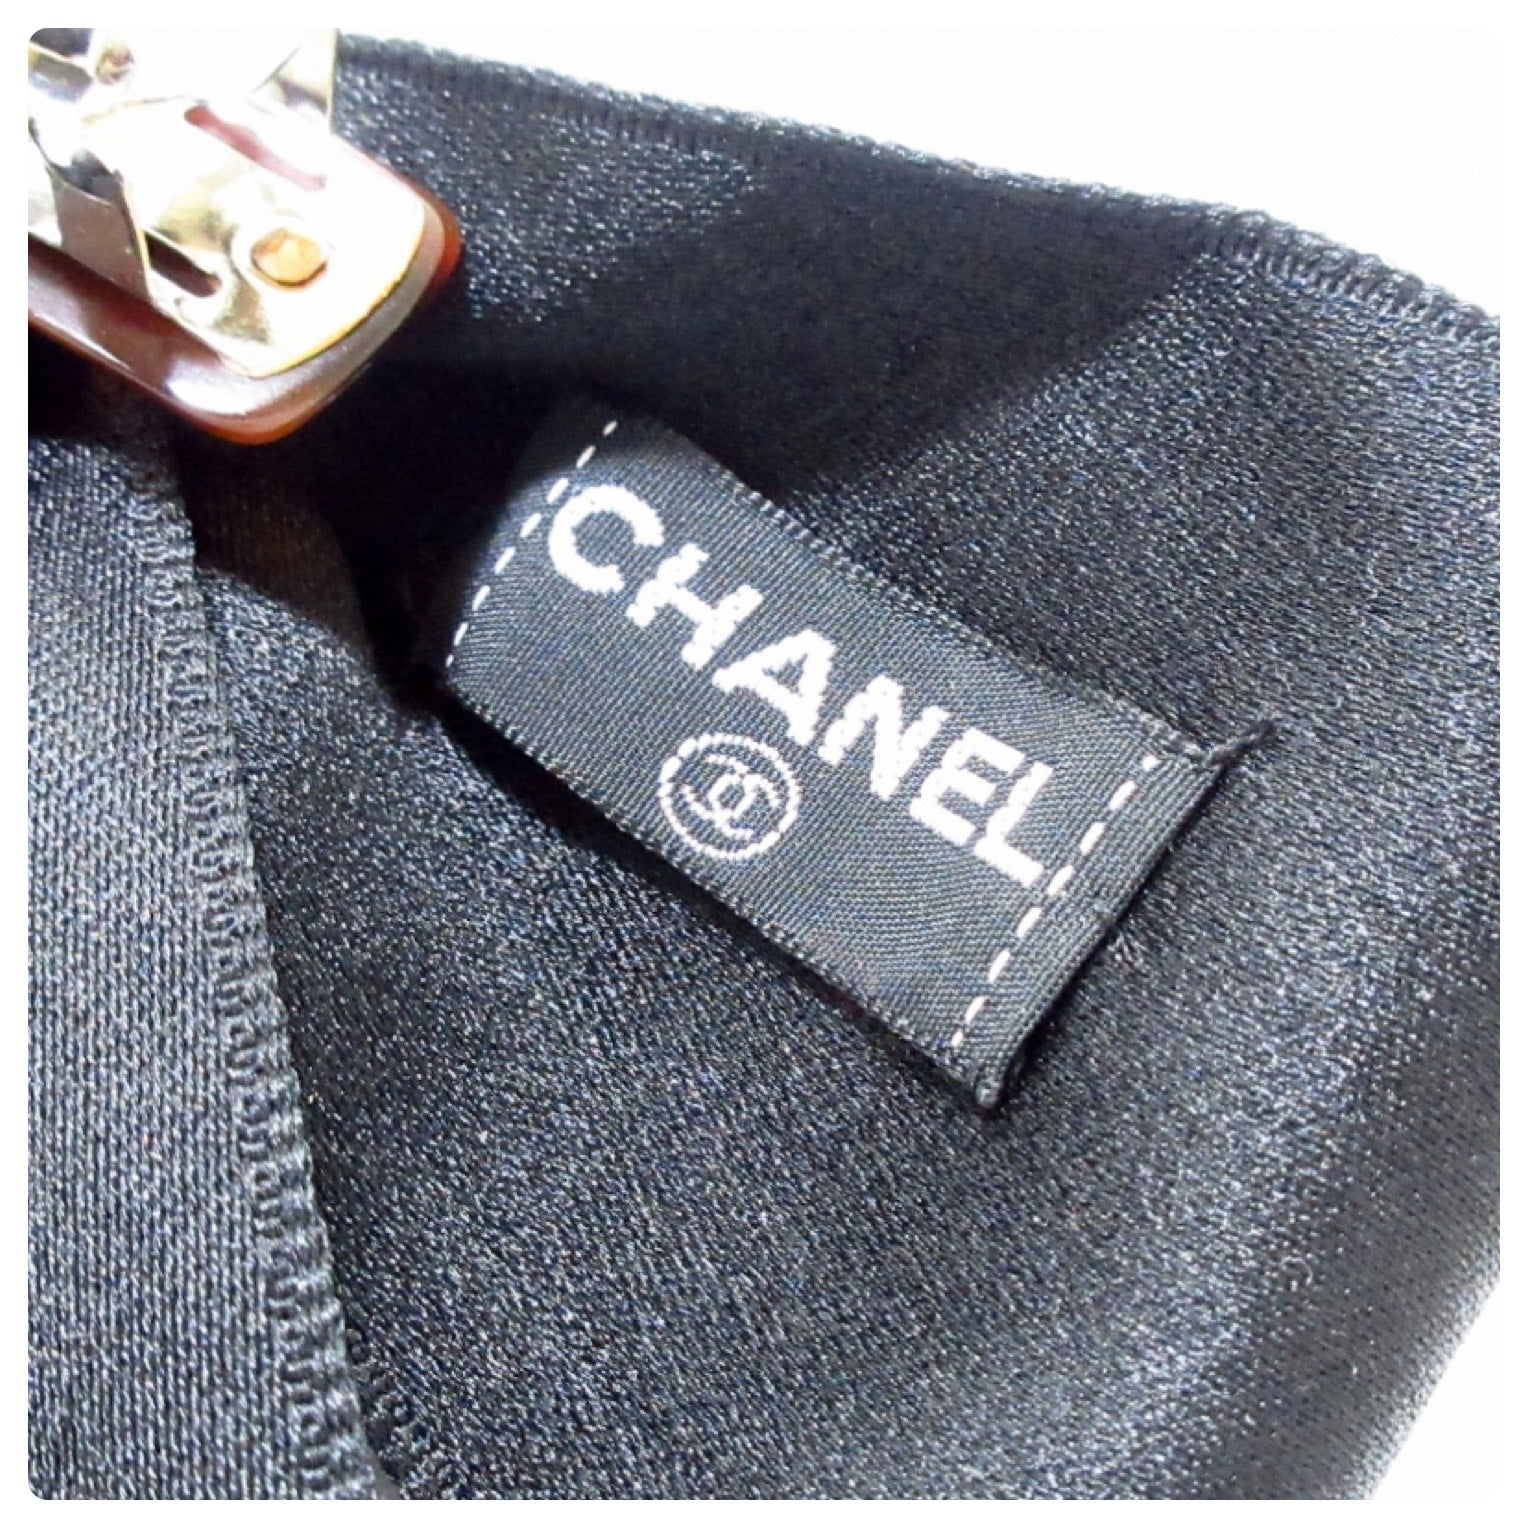 Authentic New Chanel Black/White Camelia Flower Satin Bow Barrette Hai –  Paris Station Shop